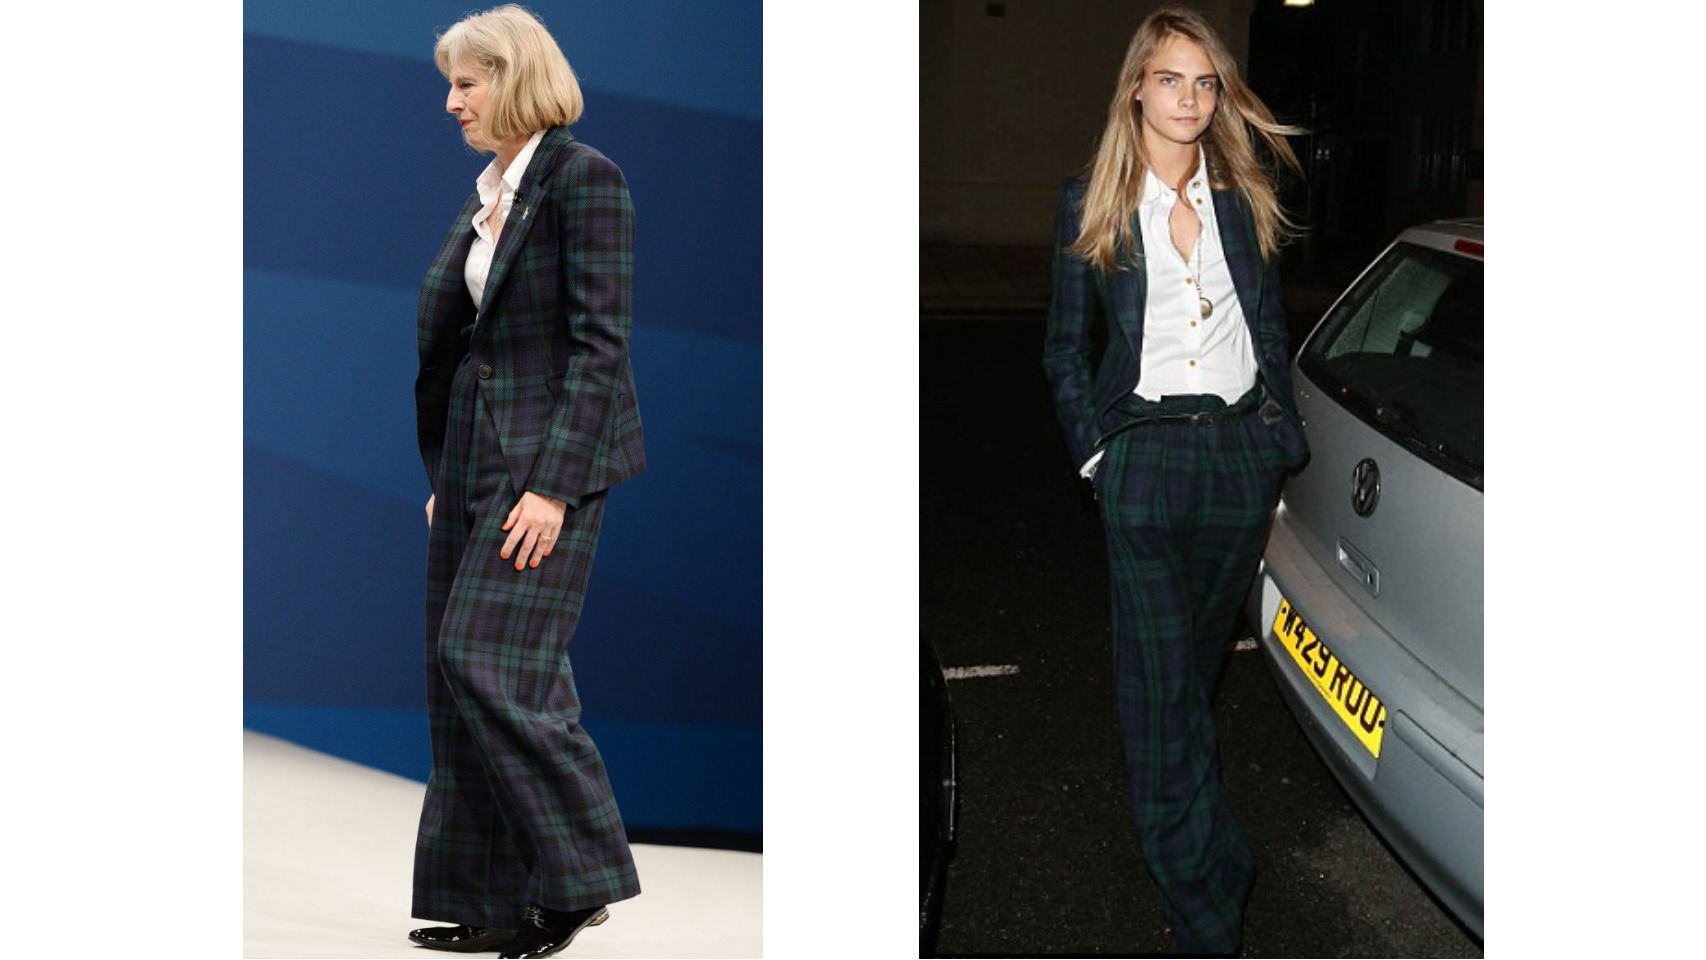 Al llevar el traje de chaqueta de Vivienne Westwood, fue comparada con la modelo Cara Delevingne.